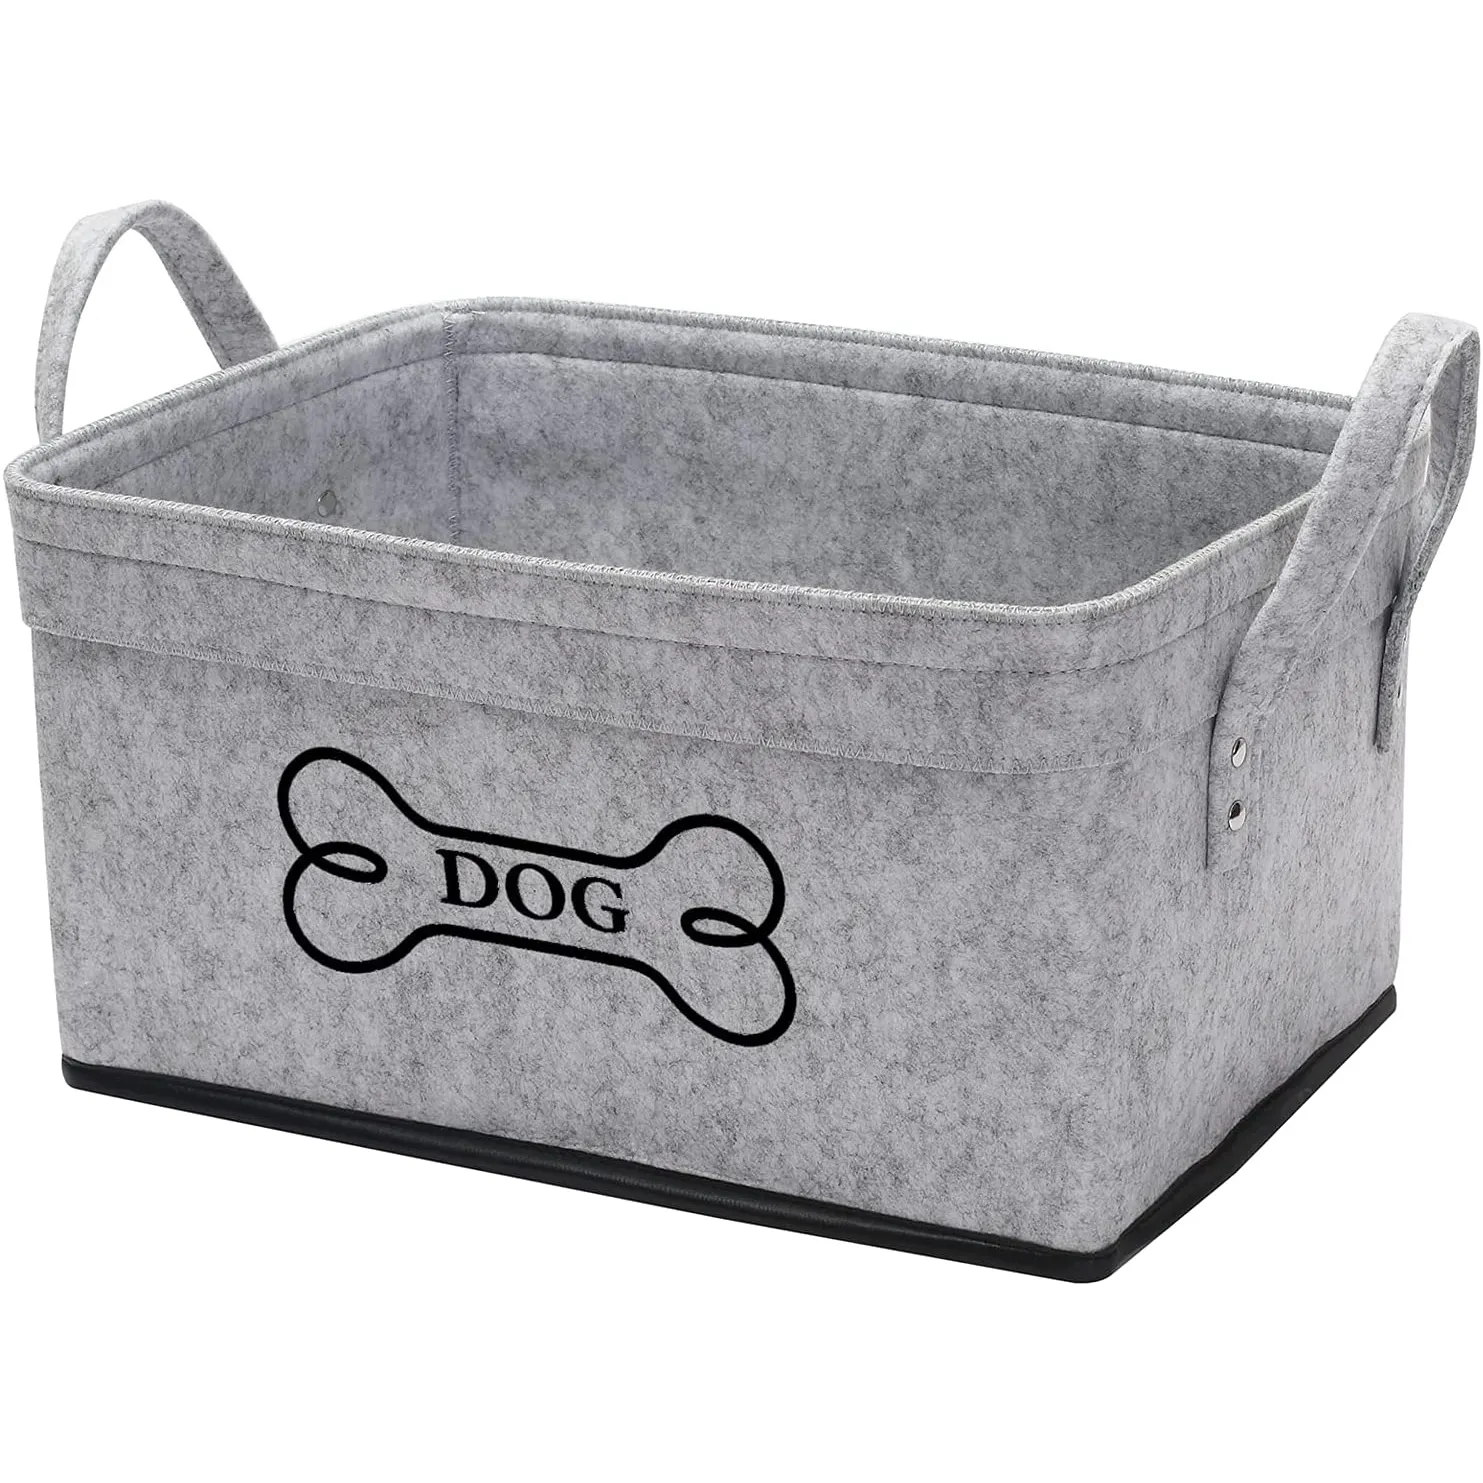 Cubo de almacenamiento de fieltro suave para mascotas, cesta organizadora Rectangular, caja de juguetes para perros, cesta grande de lavandería